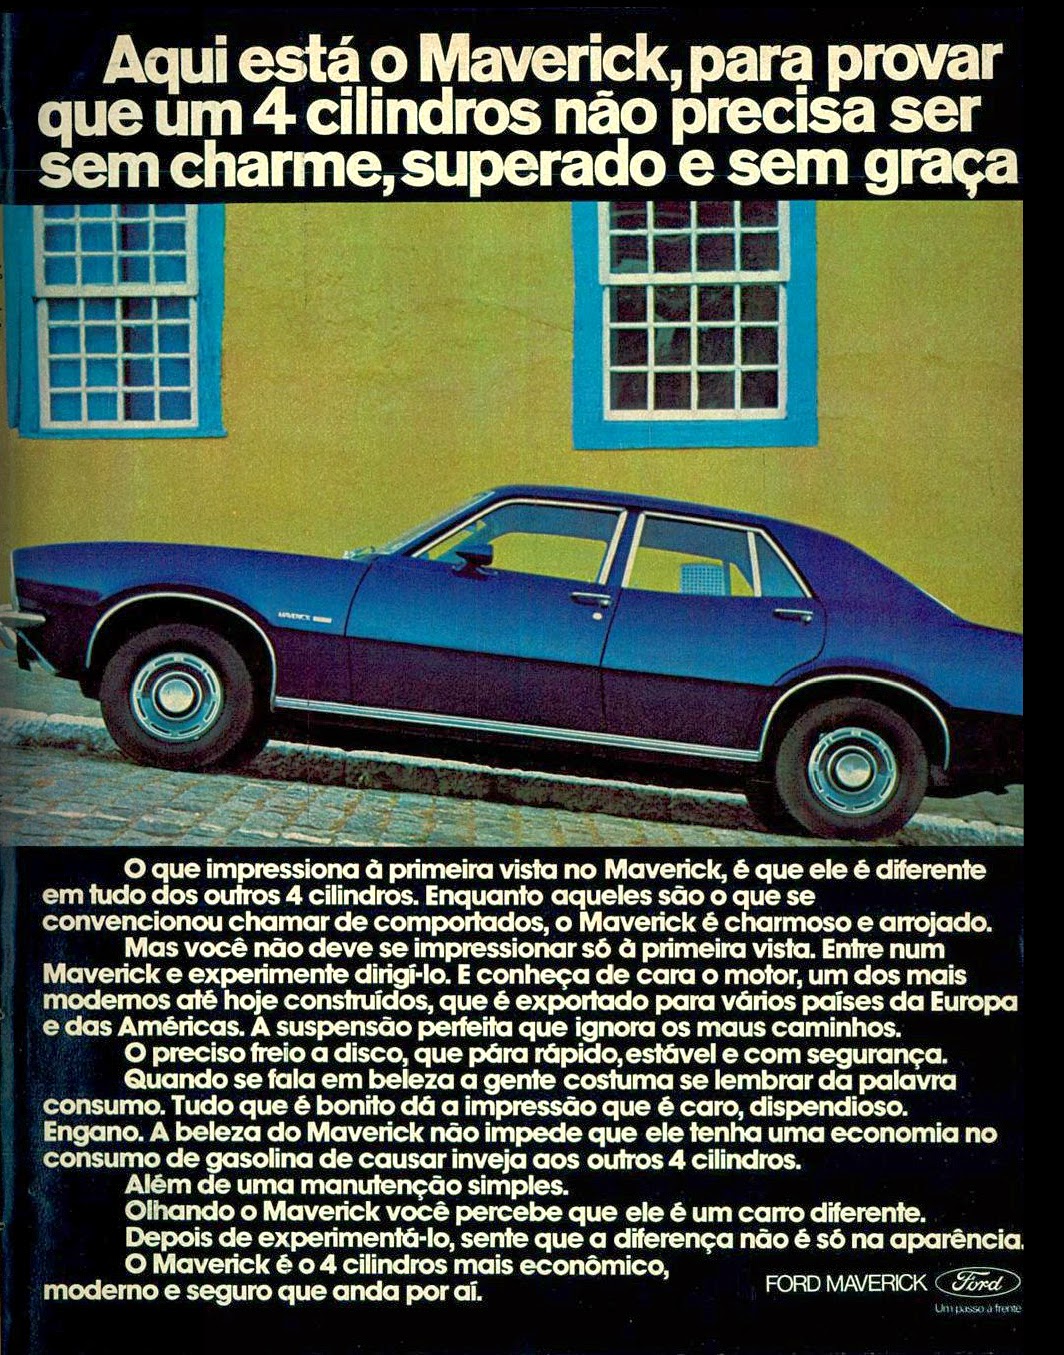 1975. brazilian advertising cars in the 70. os anos 70. história da década de 70; Brazil in the 70s; propaganda carros anos 70; Oswaldo Hernandez; 